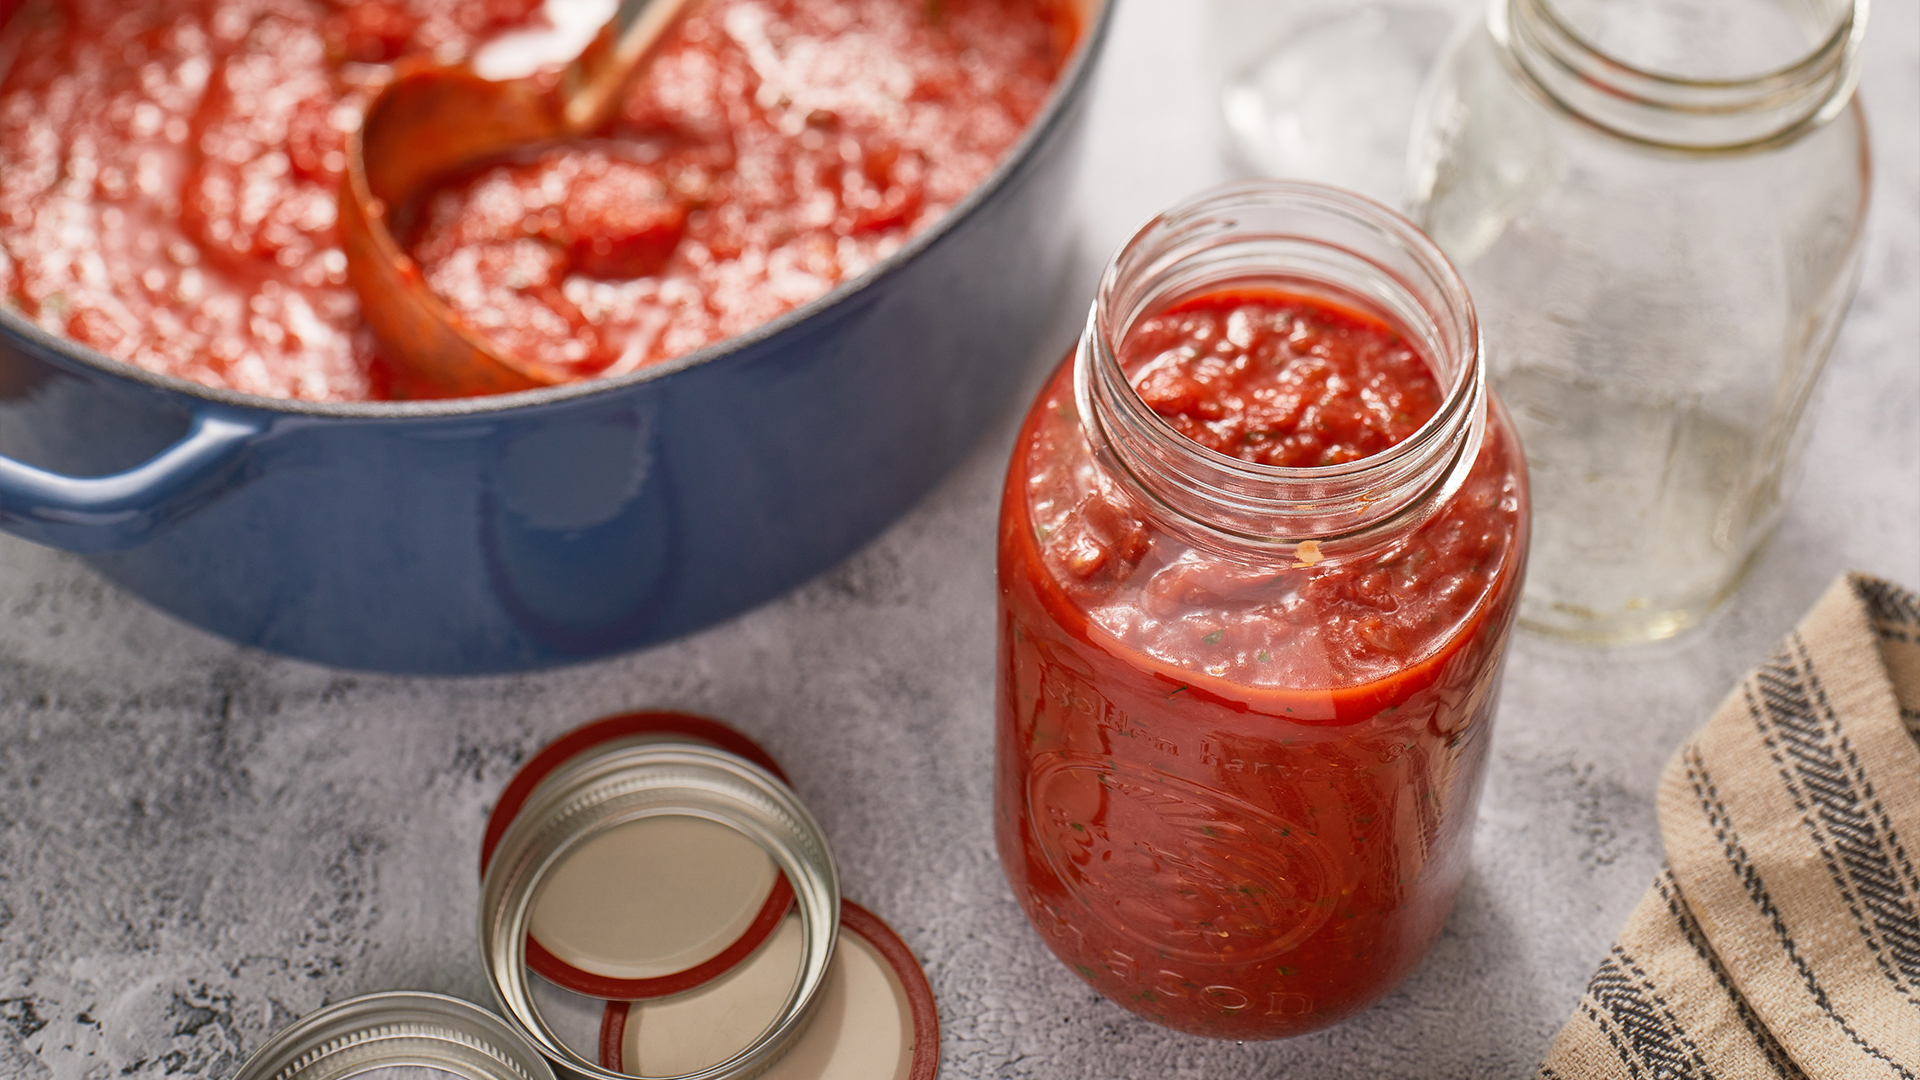 Big-batch tomato sauce